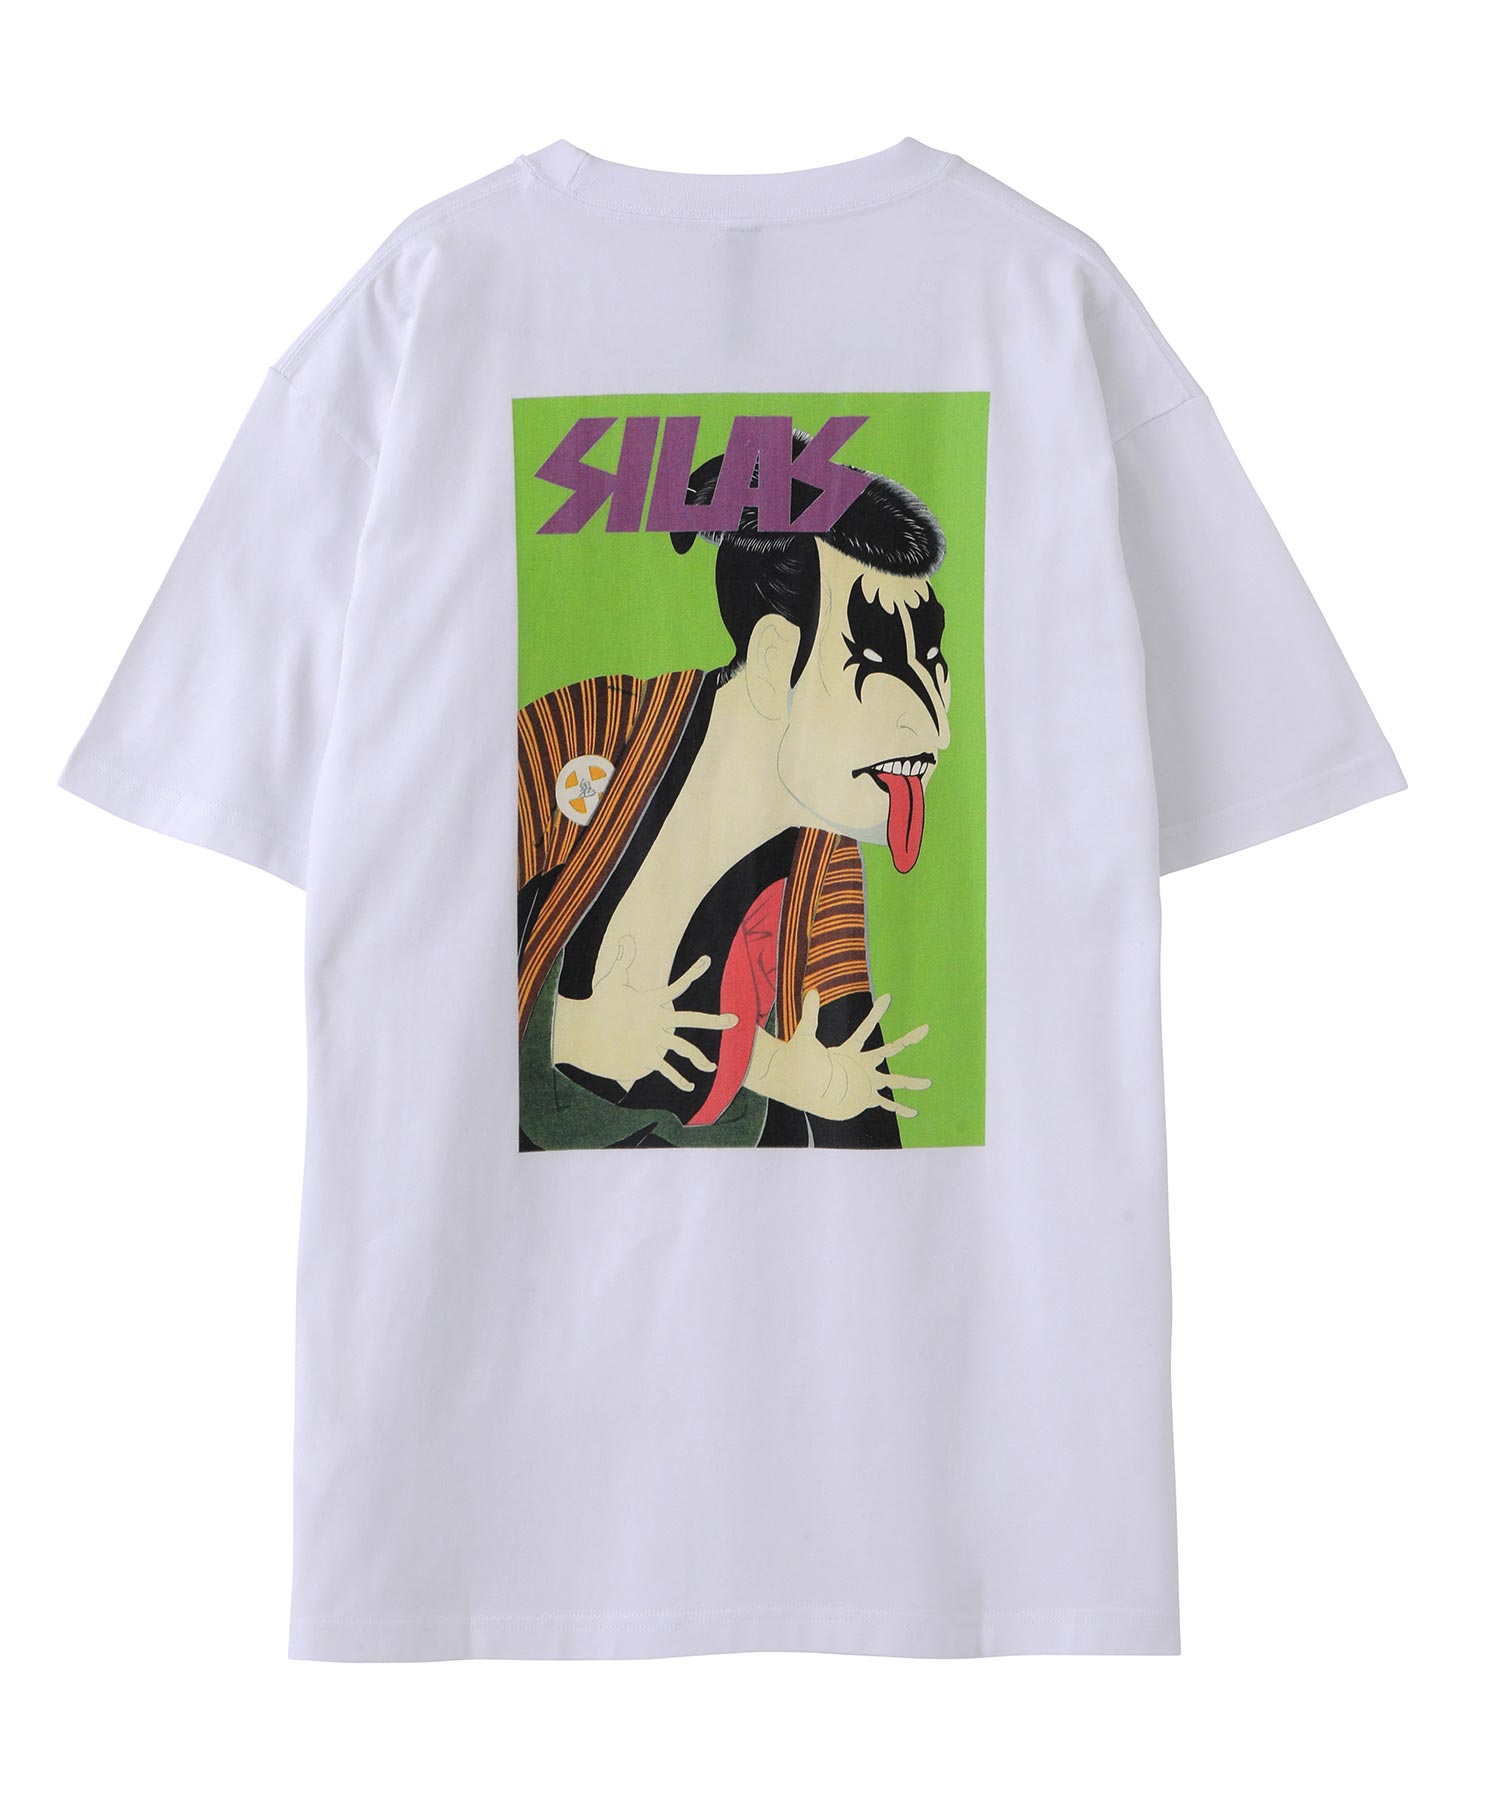 【公式】SILAS サイラス ROCK UKIYO-E PRINT S/S TEE Tシャツ トップス ロゴ プリント 半袖 ショートスリーブ |  XLARGE X-girl公式calif楽天市場店